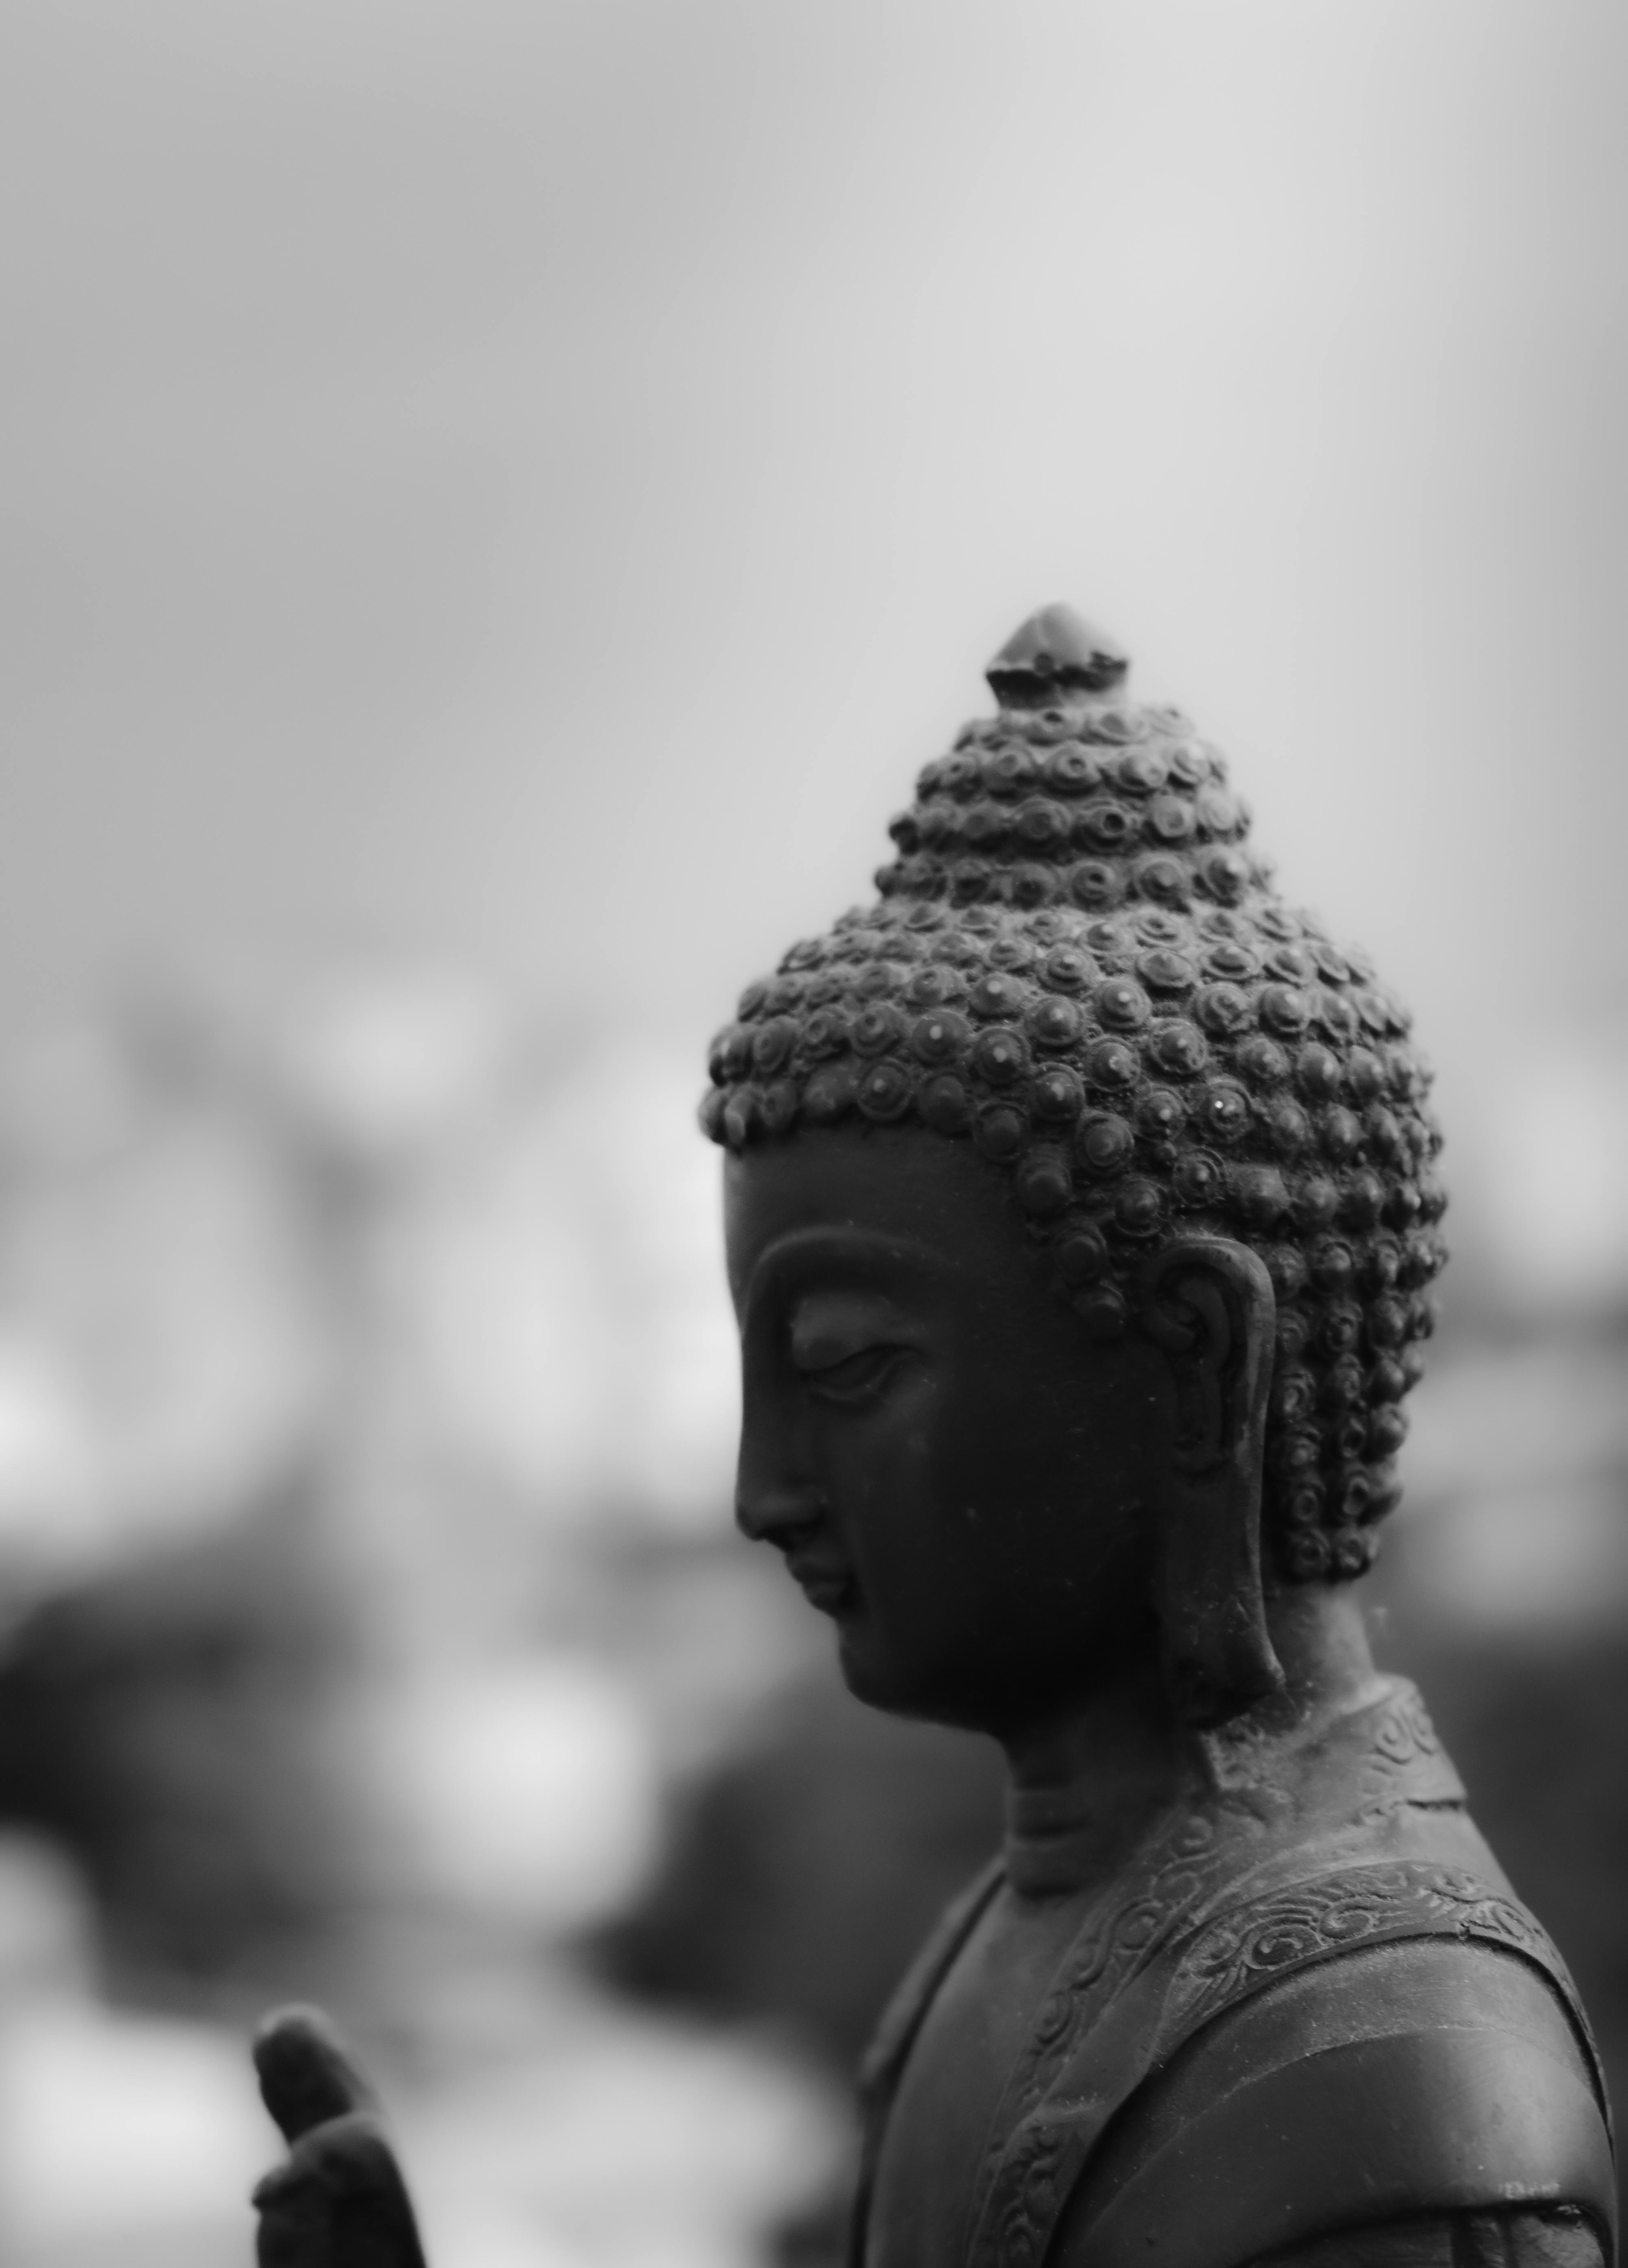 Grayscale Photo of Buddha Statue · Free Stock Photo